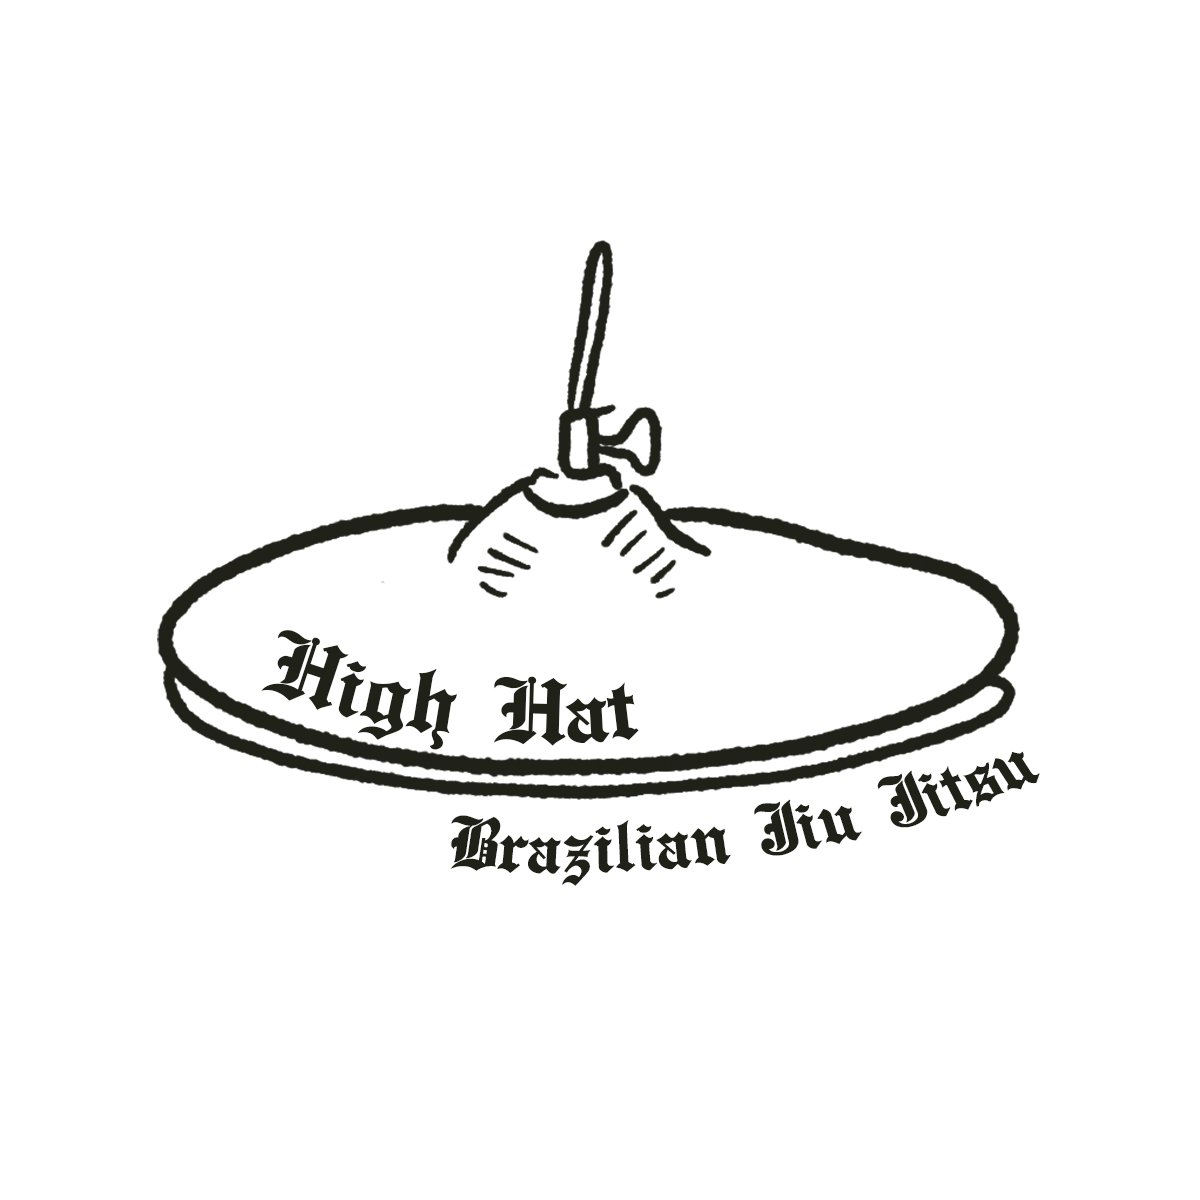 High Hat Brazilian Jiu Jitsu